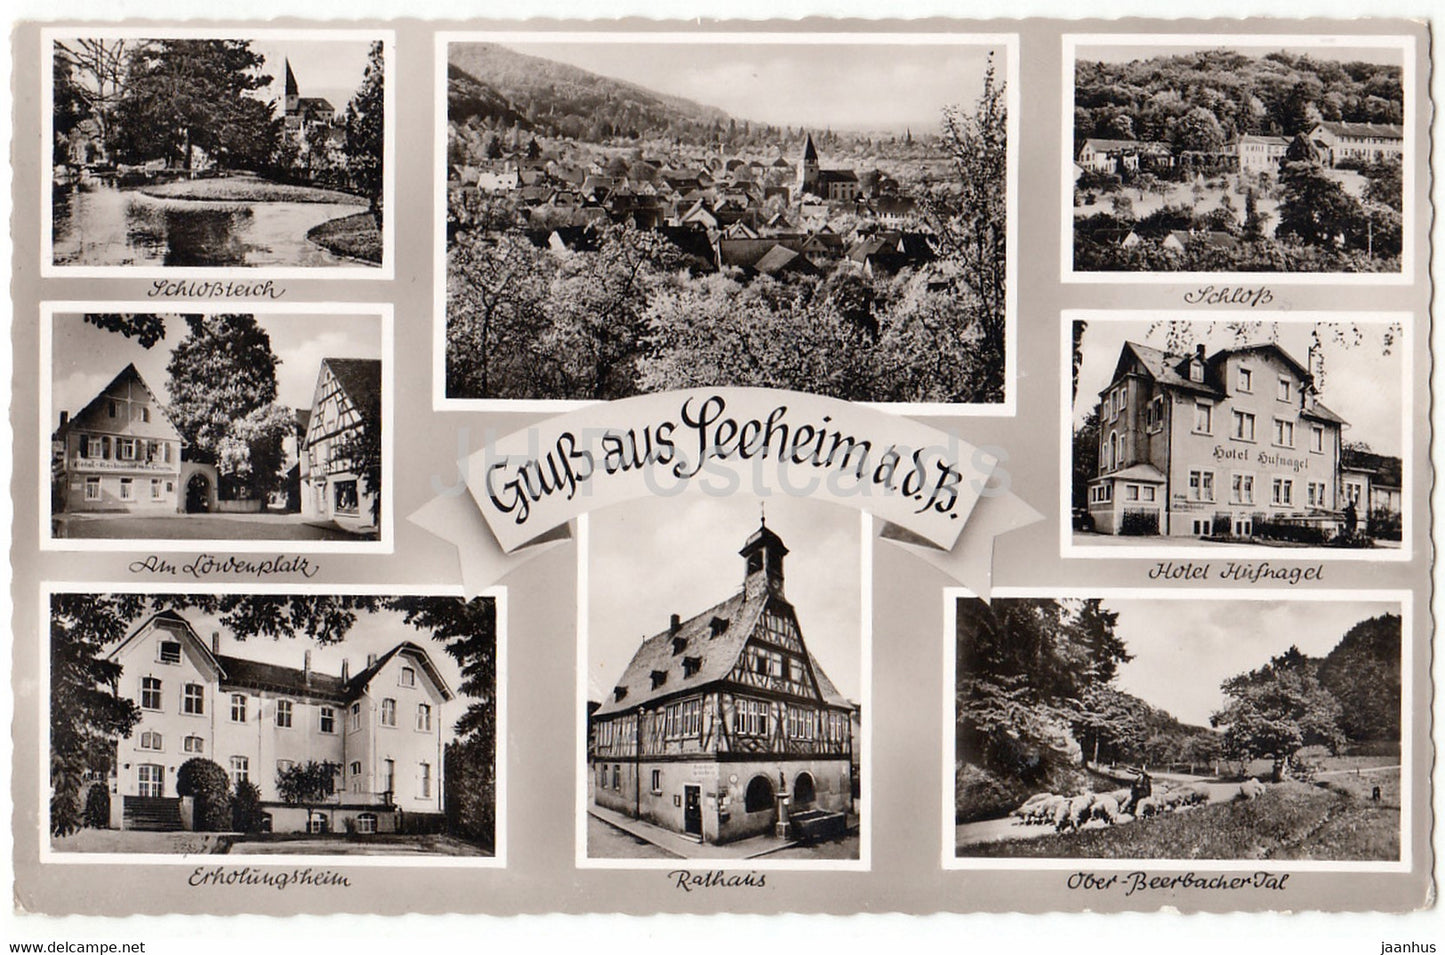 Gruss aus Seeheim a d B - Lowenplatz - Erholungsheim - Schloss - Hotel Hufnagel - Rathaus - Germany - unused - JH Postcards